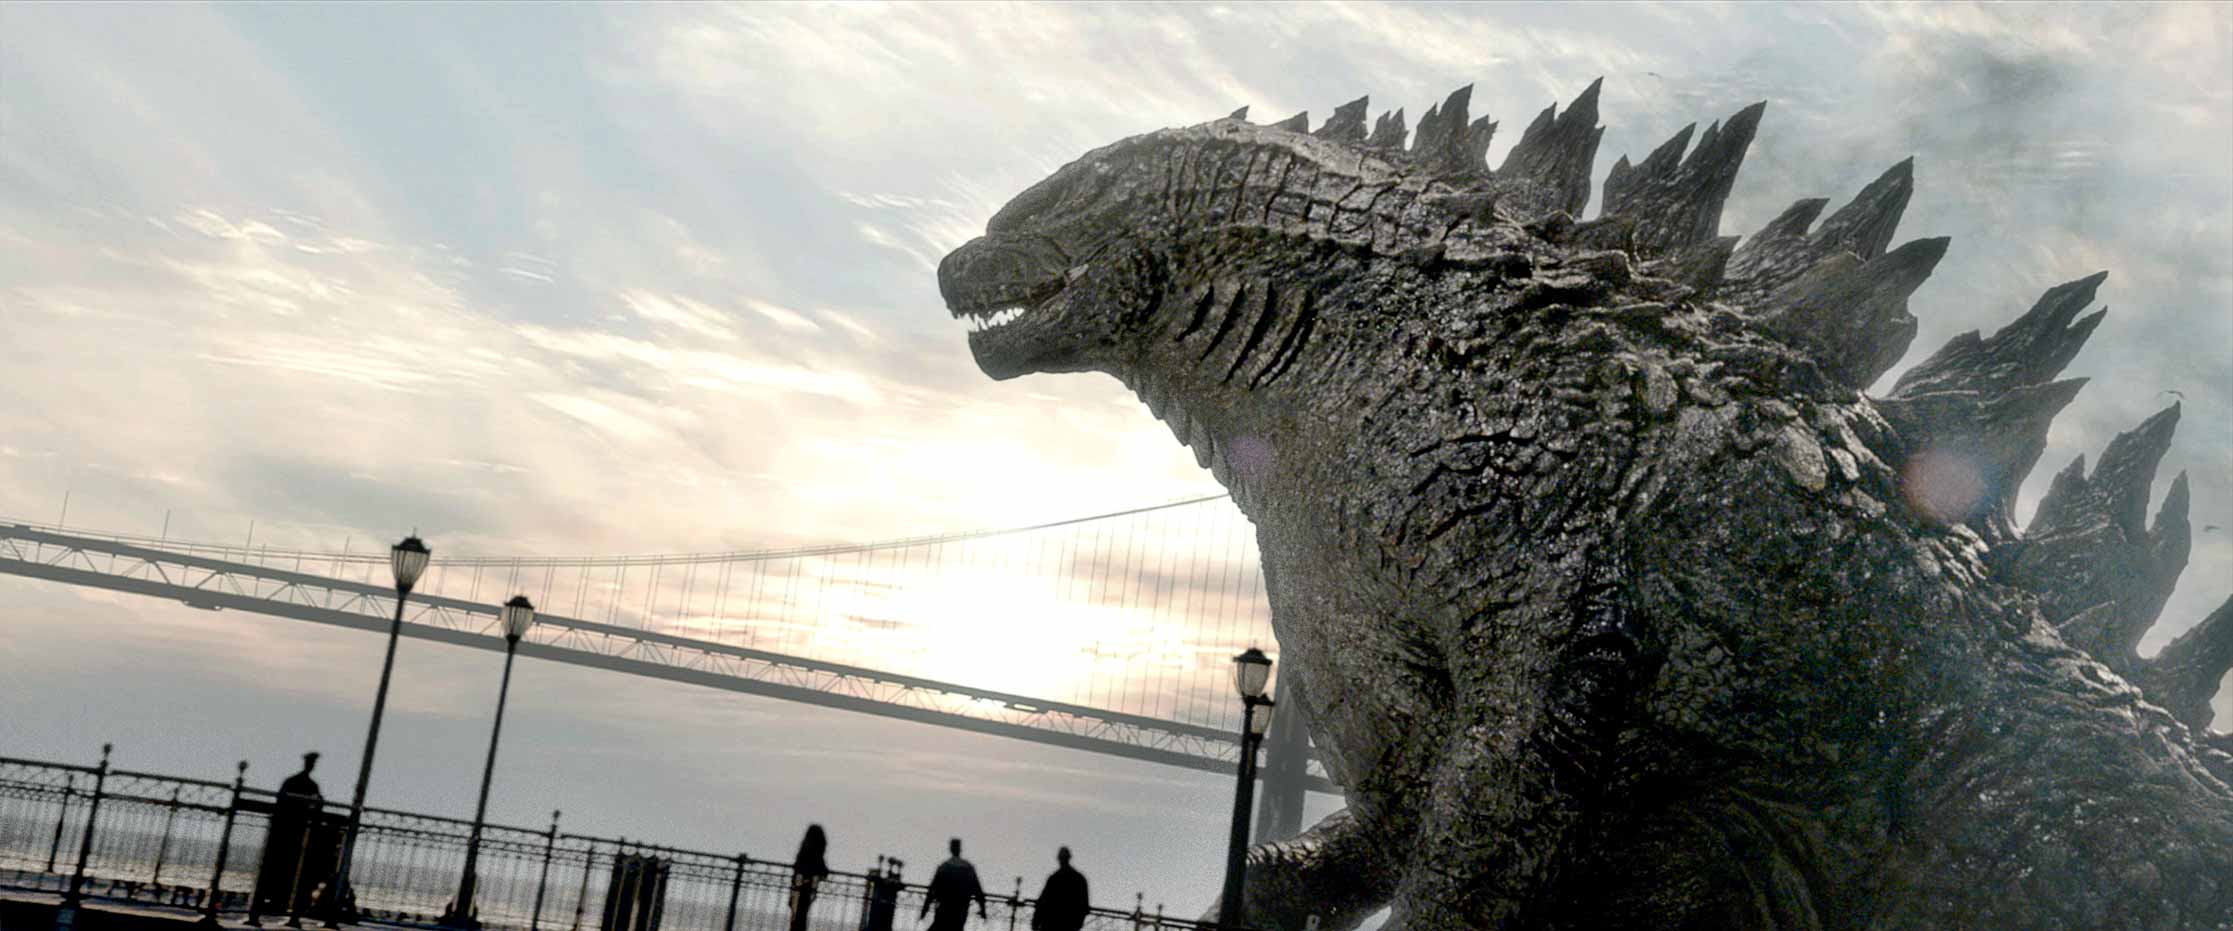 Godzilla Movie 2014 Film Still